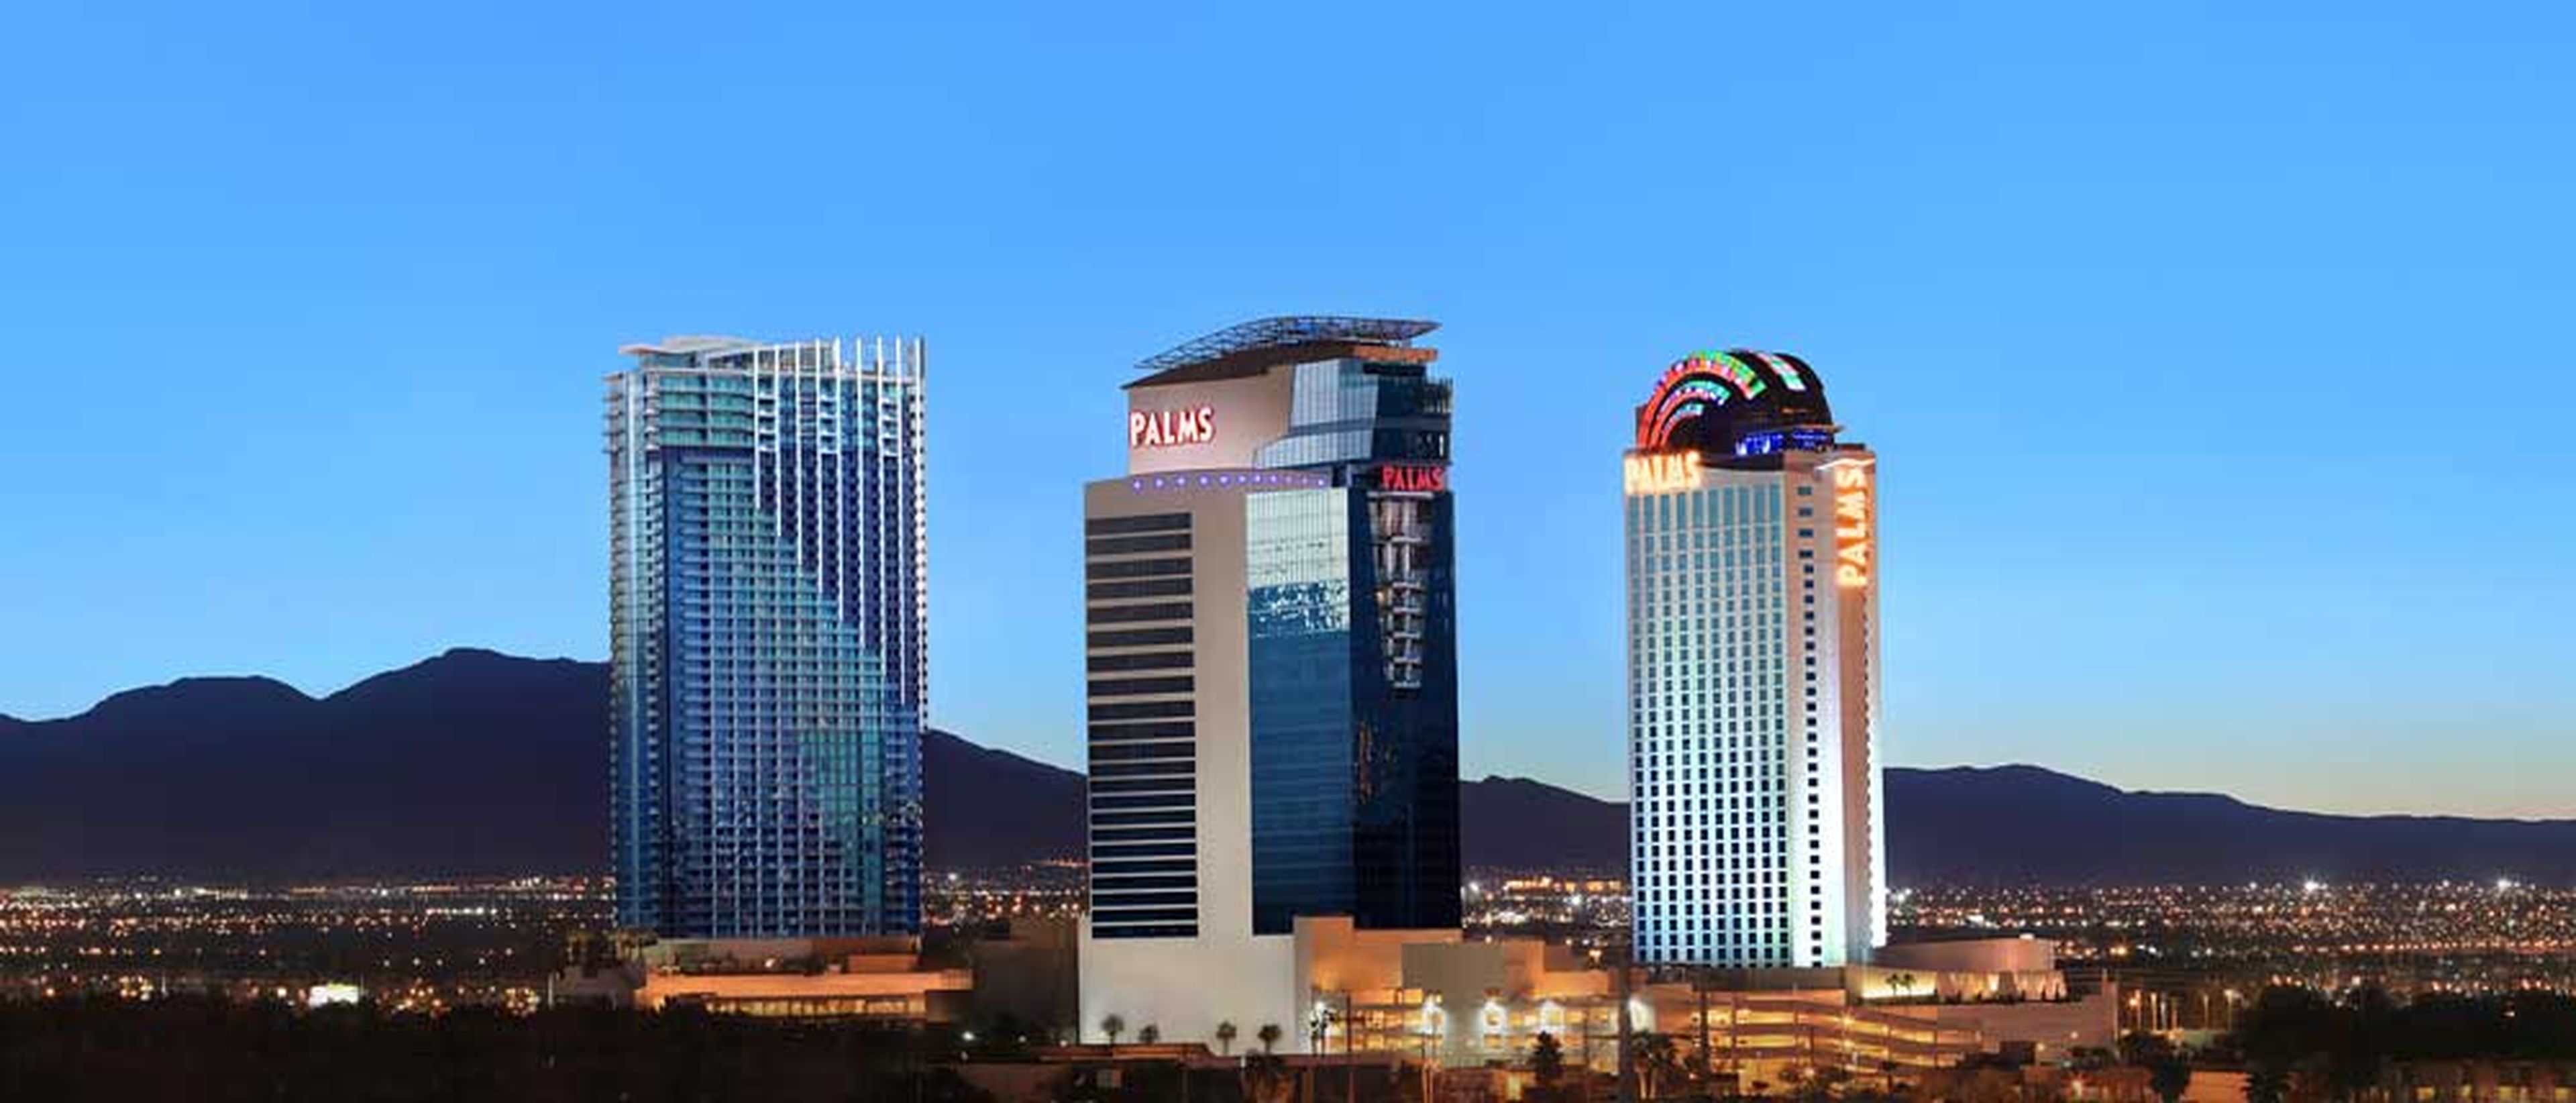 El Palm Casino Resort, en Las Vegas aloja la habitación diseñada por Damien Hirst.